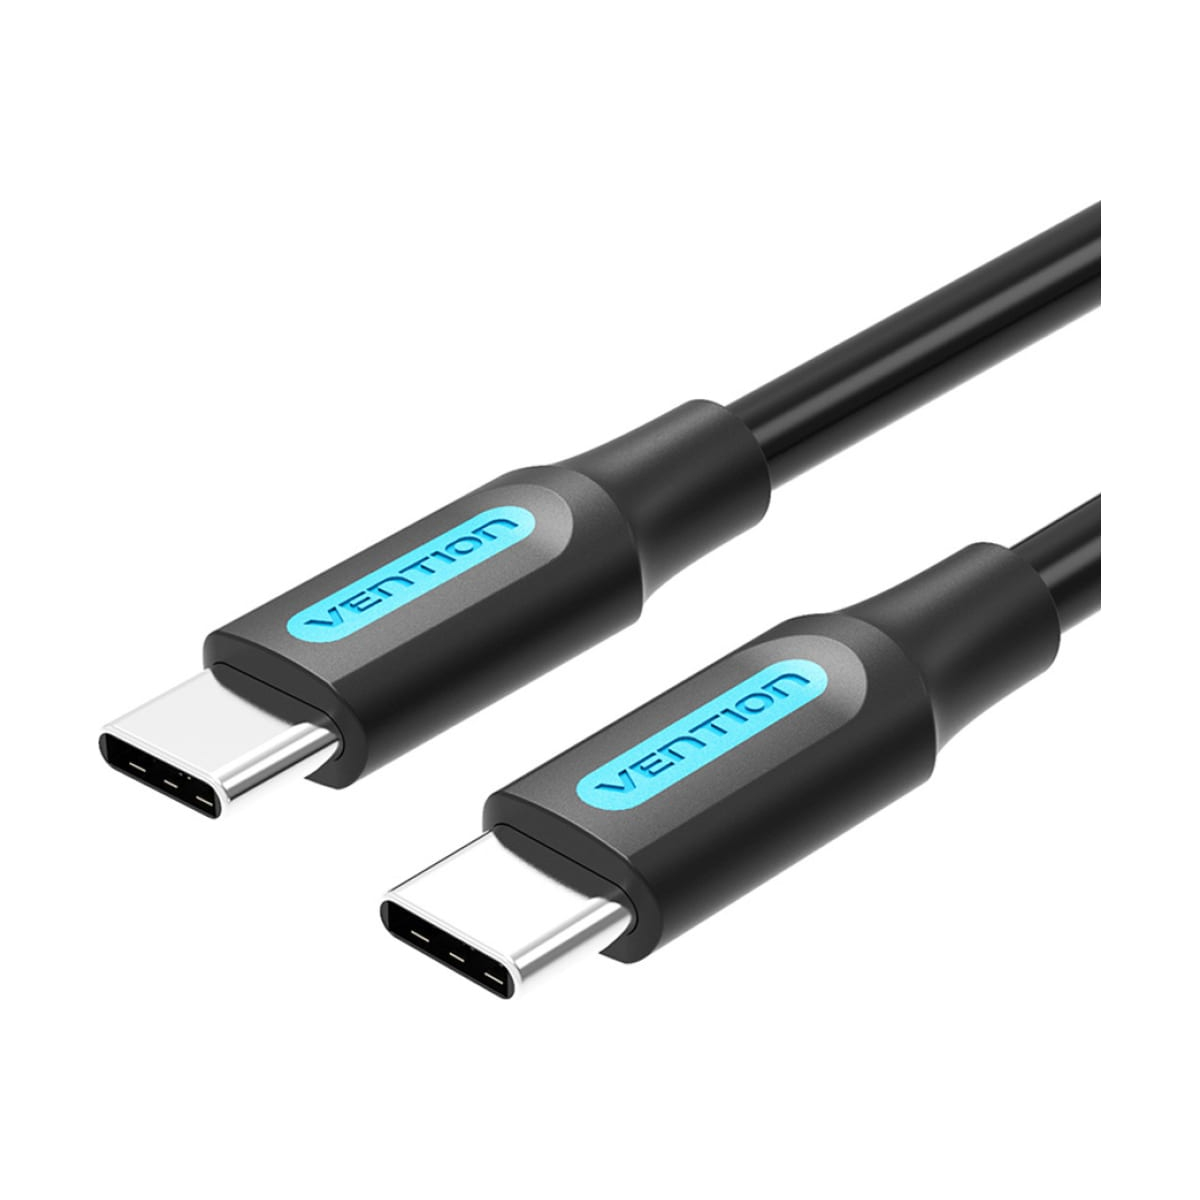 Кабель Vention USB 2.0 CM/CM - 1м (COSBF) зарядный usb кабель для старых моделей nokia компактный usb кабель постоянного тока с разъемом 2 мм